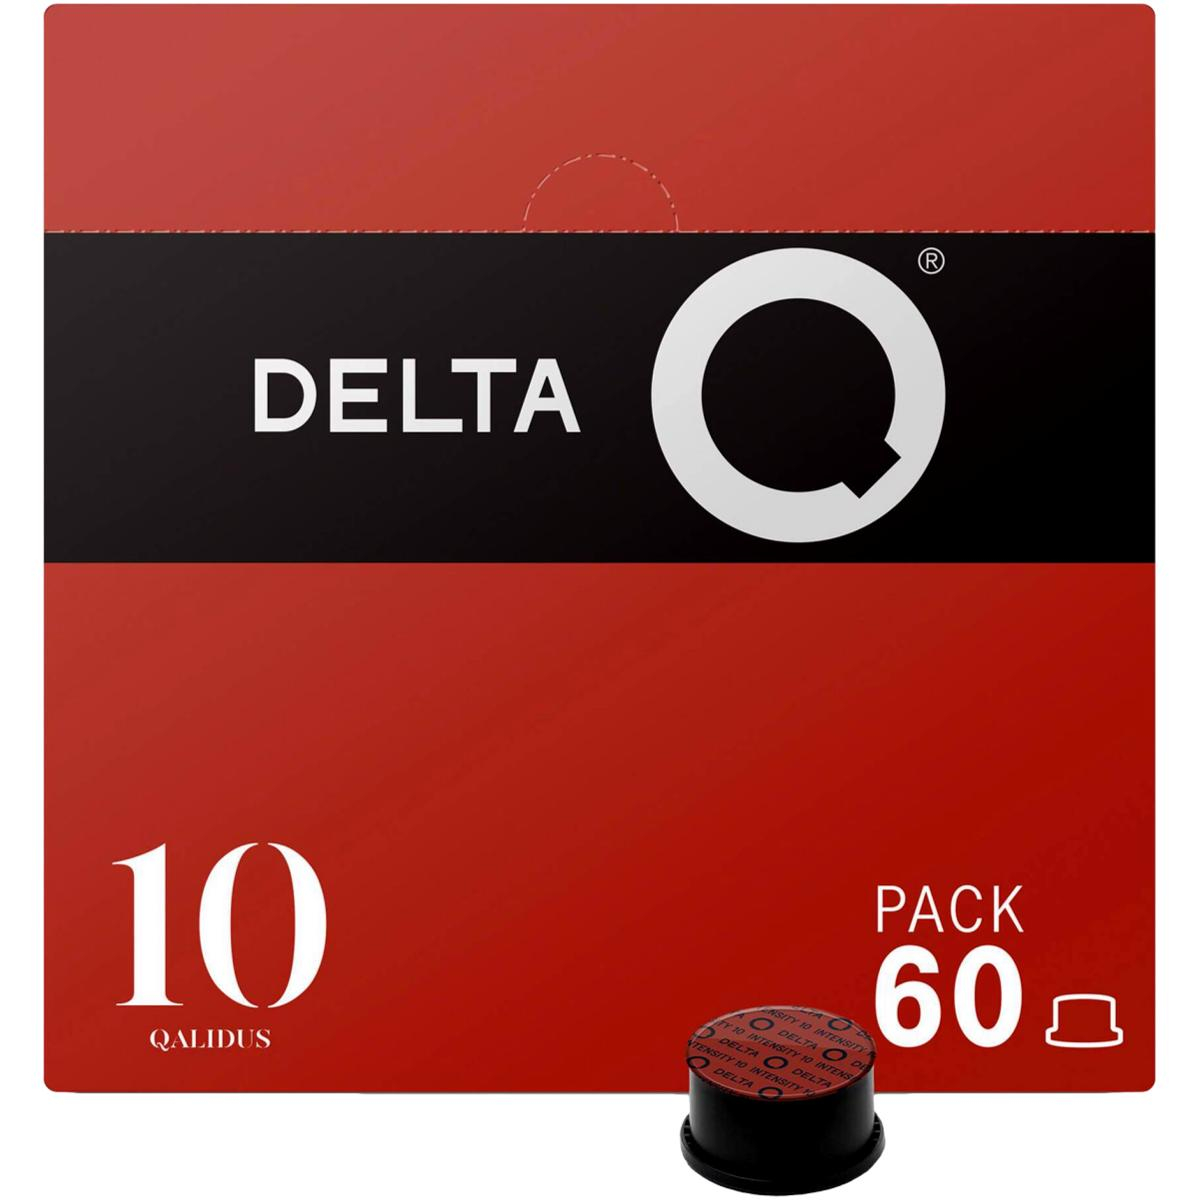 Delta Q Qalidus 10 units